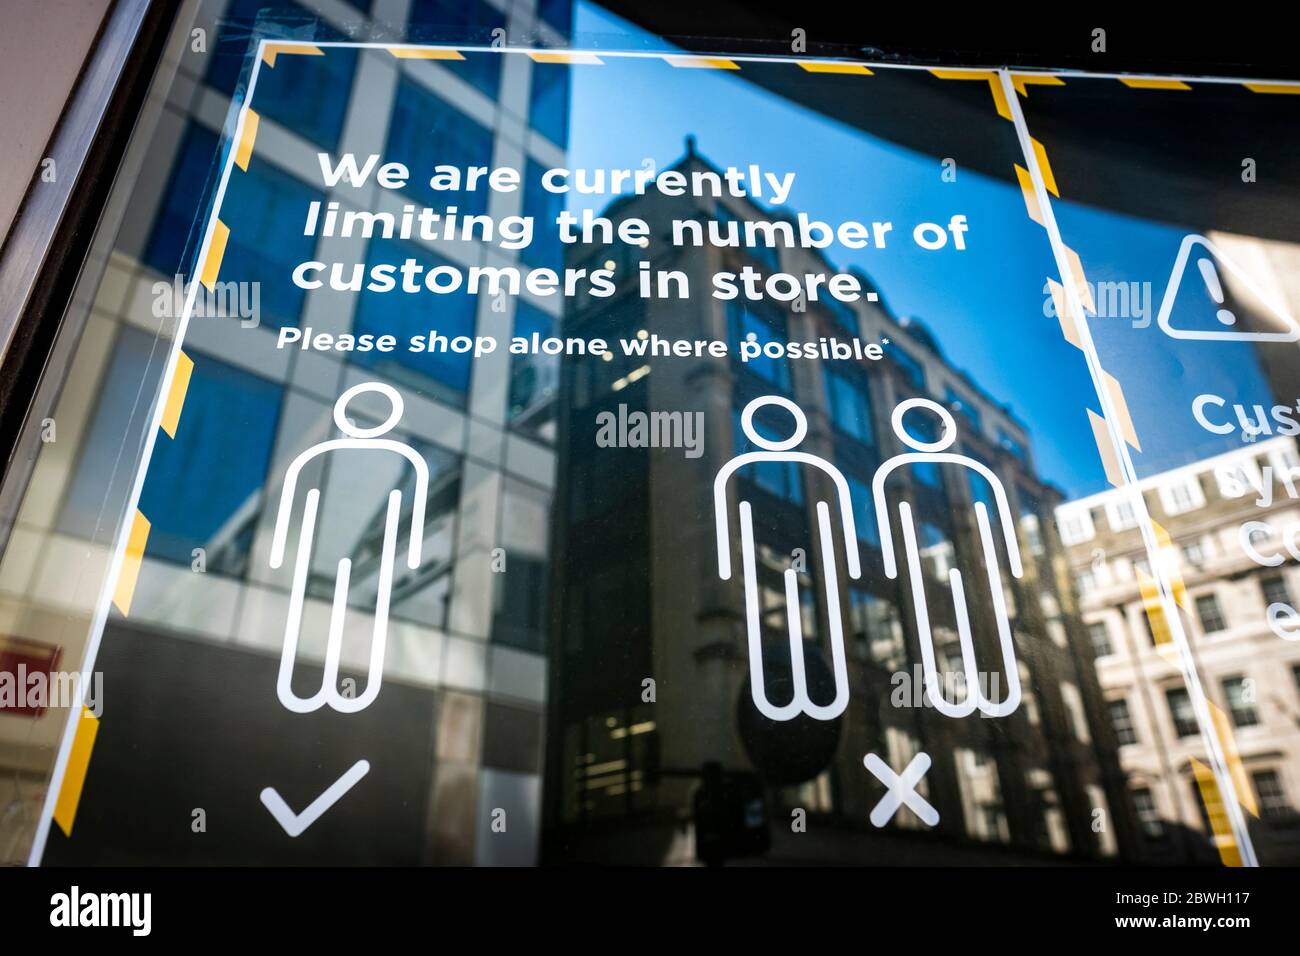 Londra-giugno 2020: Guida alle distanze sociali sulla vetrina del negozio al dettaglio Foto Stock